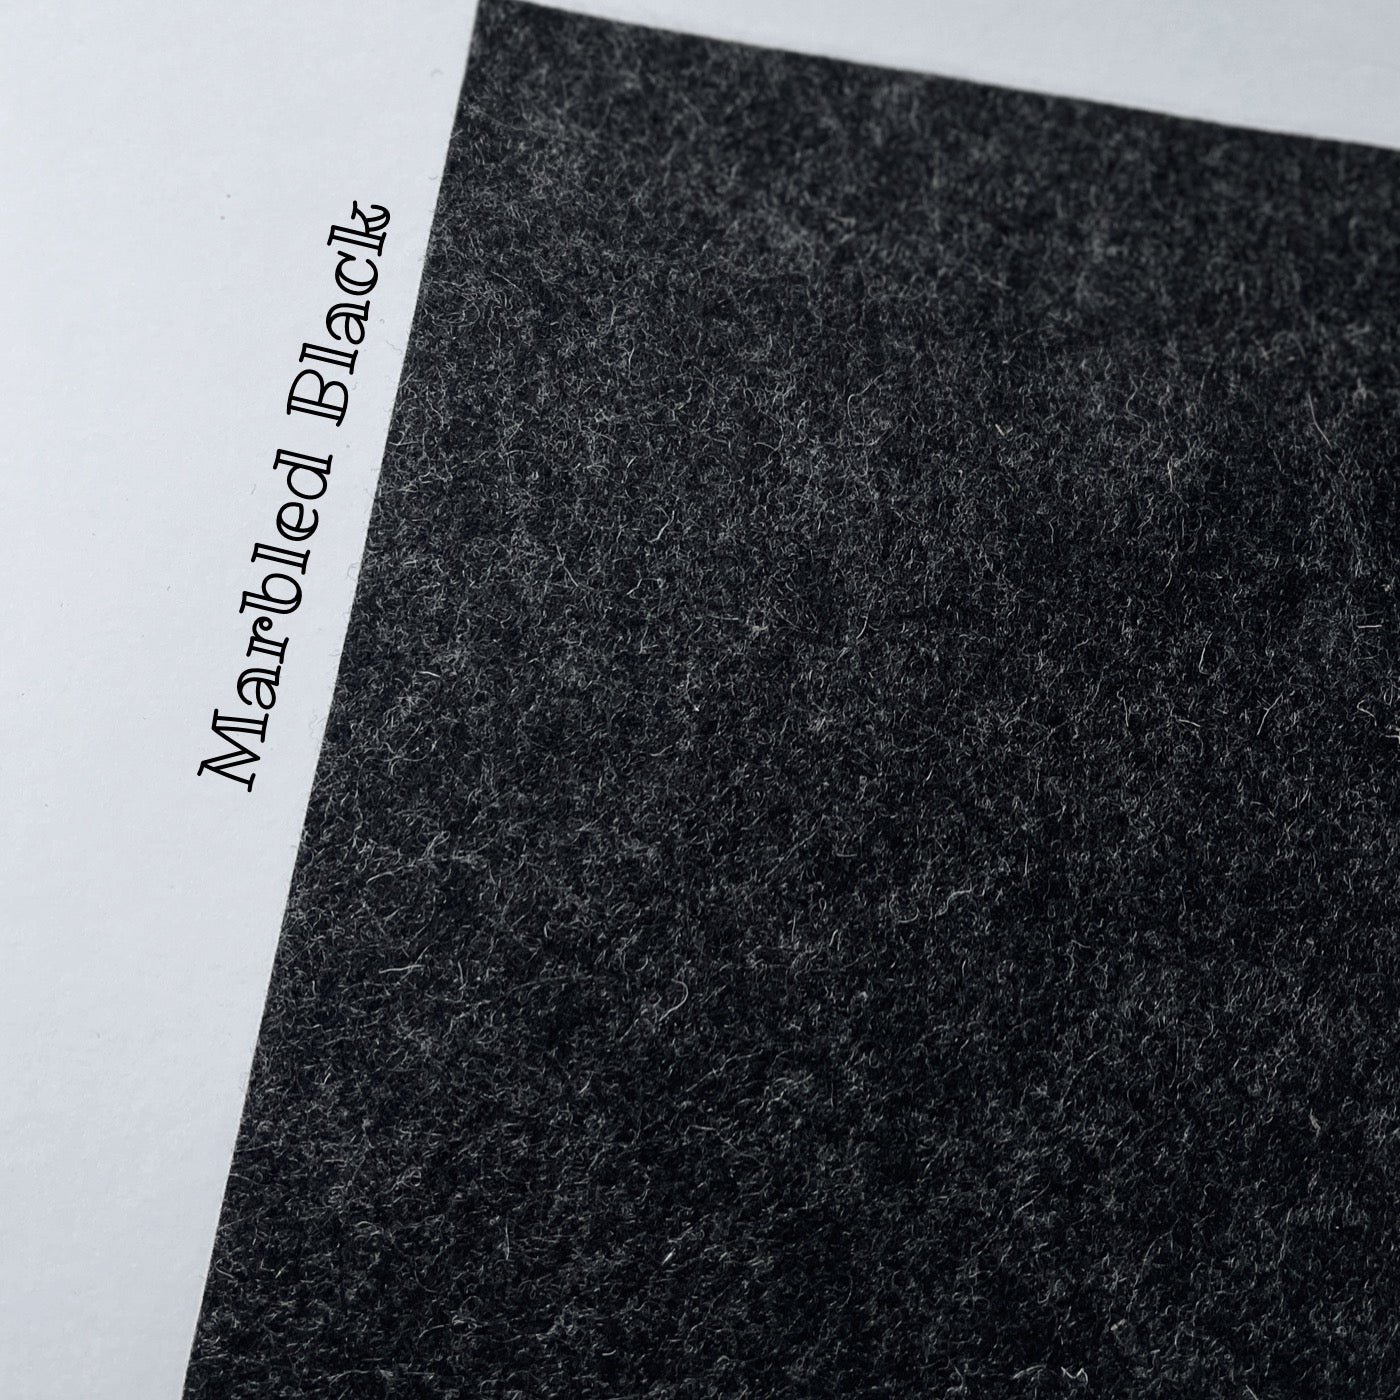 50 x 183 cm black wool felt roll 1mm, 100% European wool - Studio Koekoek